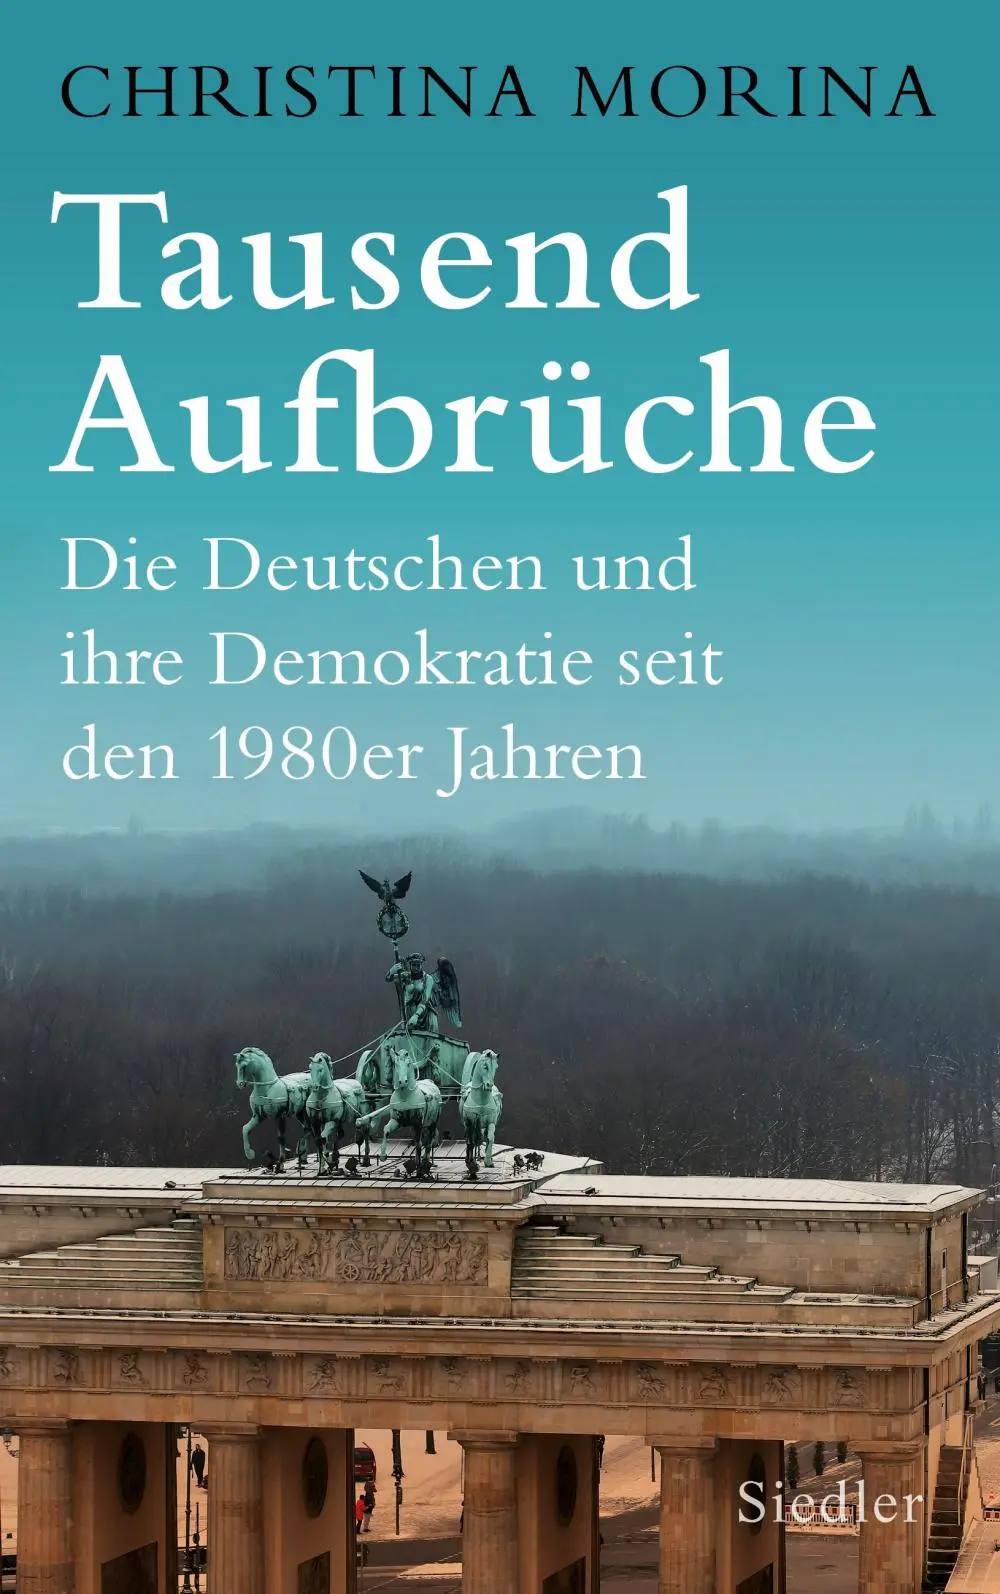 Cover des Buches "Tausend Aufbrüche"